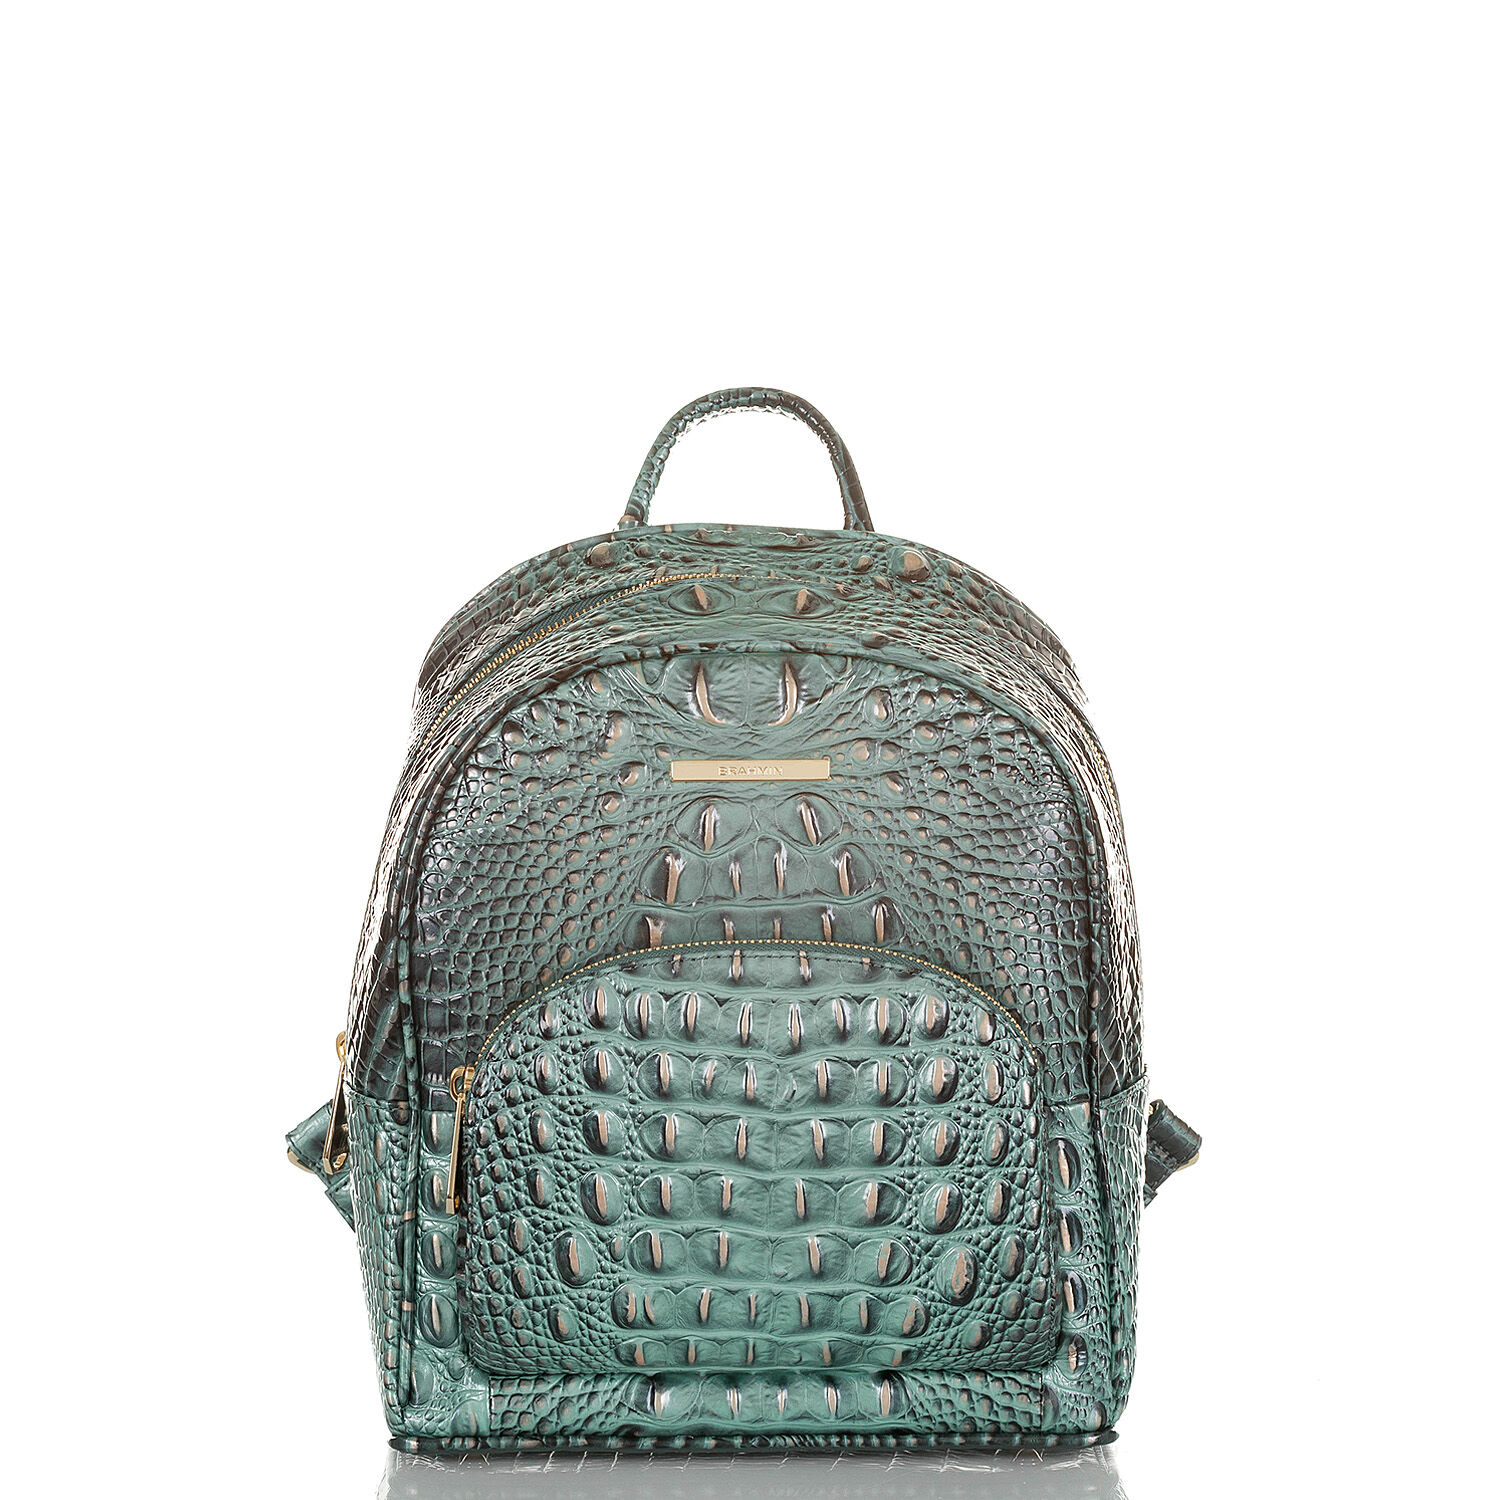 Brahmin Backpack Purse | eBay